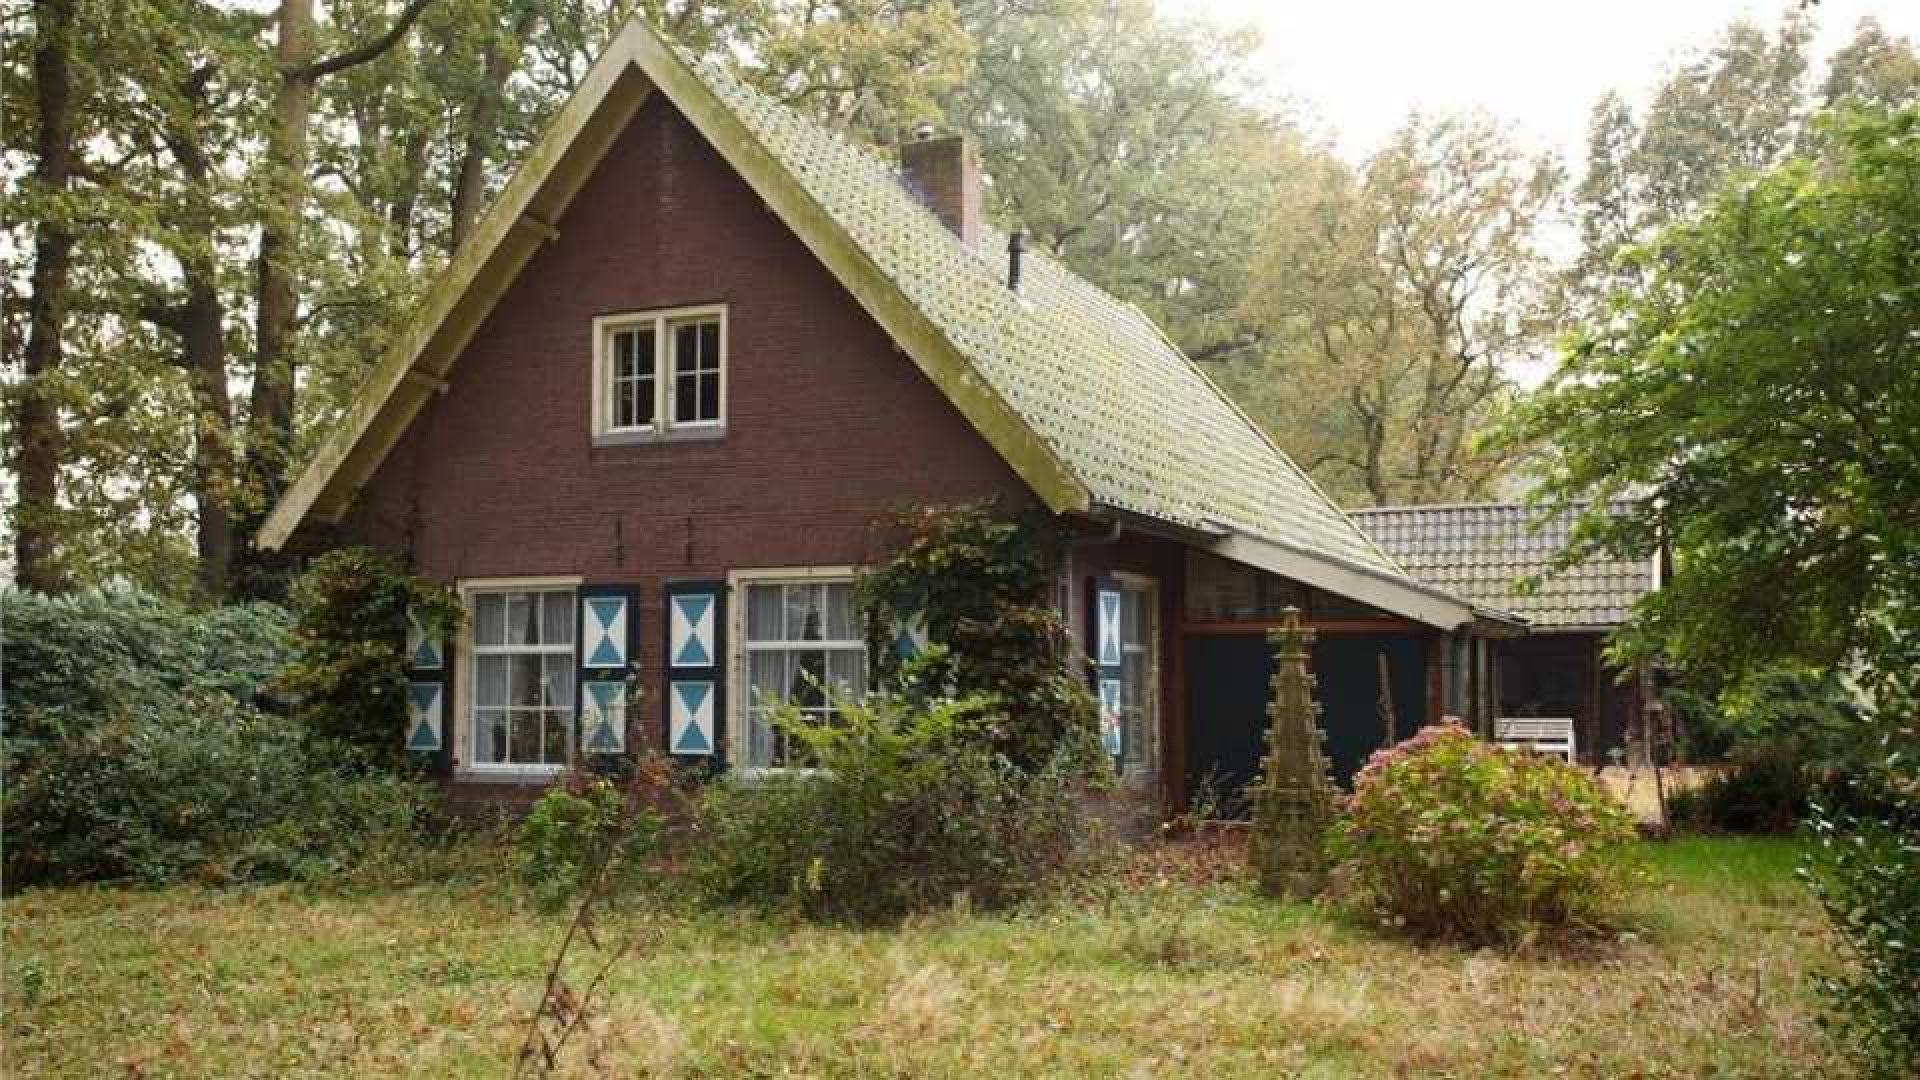 Oud PvdA topman Marcel van Dam verruilt riant landhuis voor eeuwenoud kasteel. Zie foto's